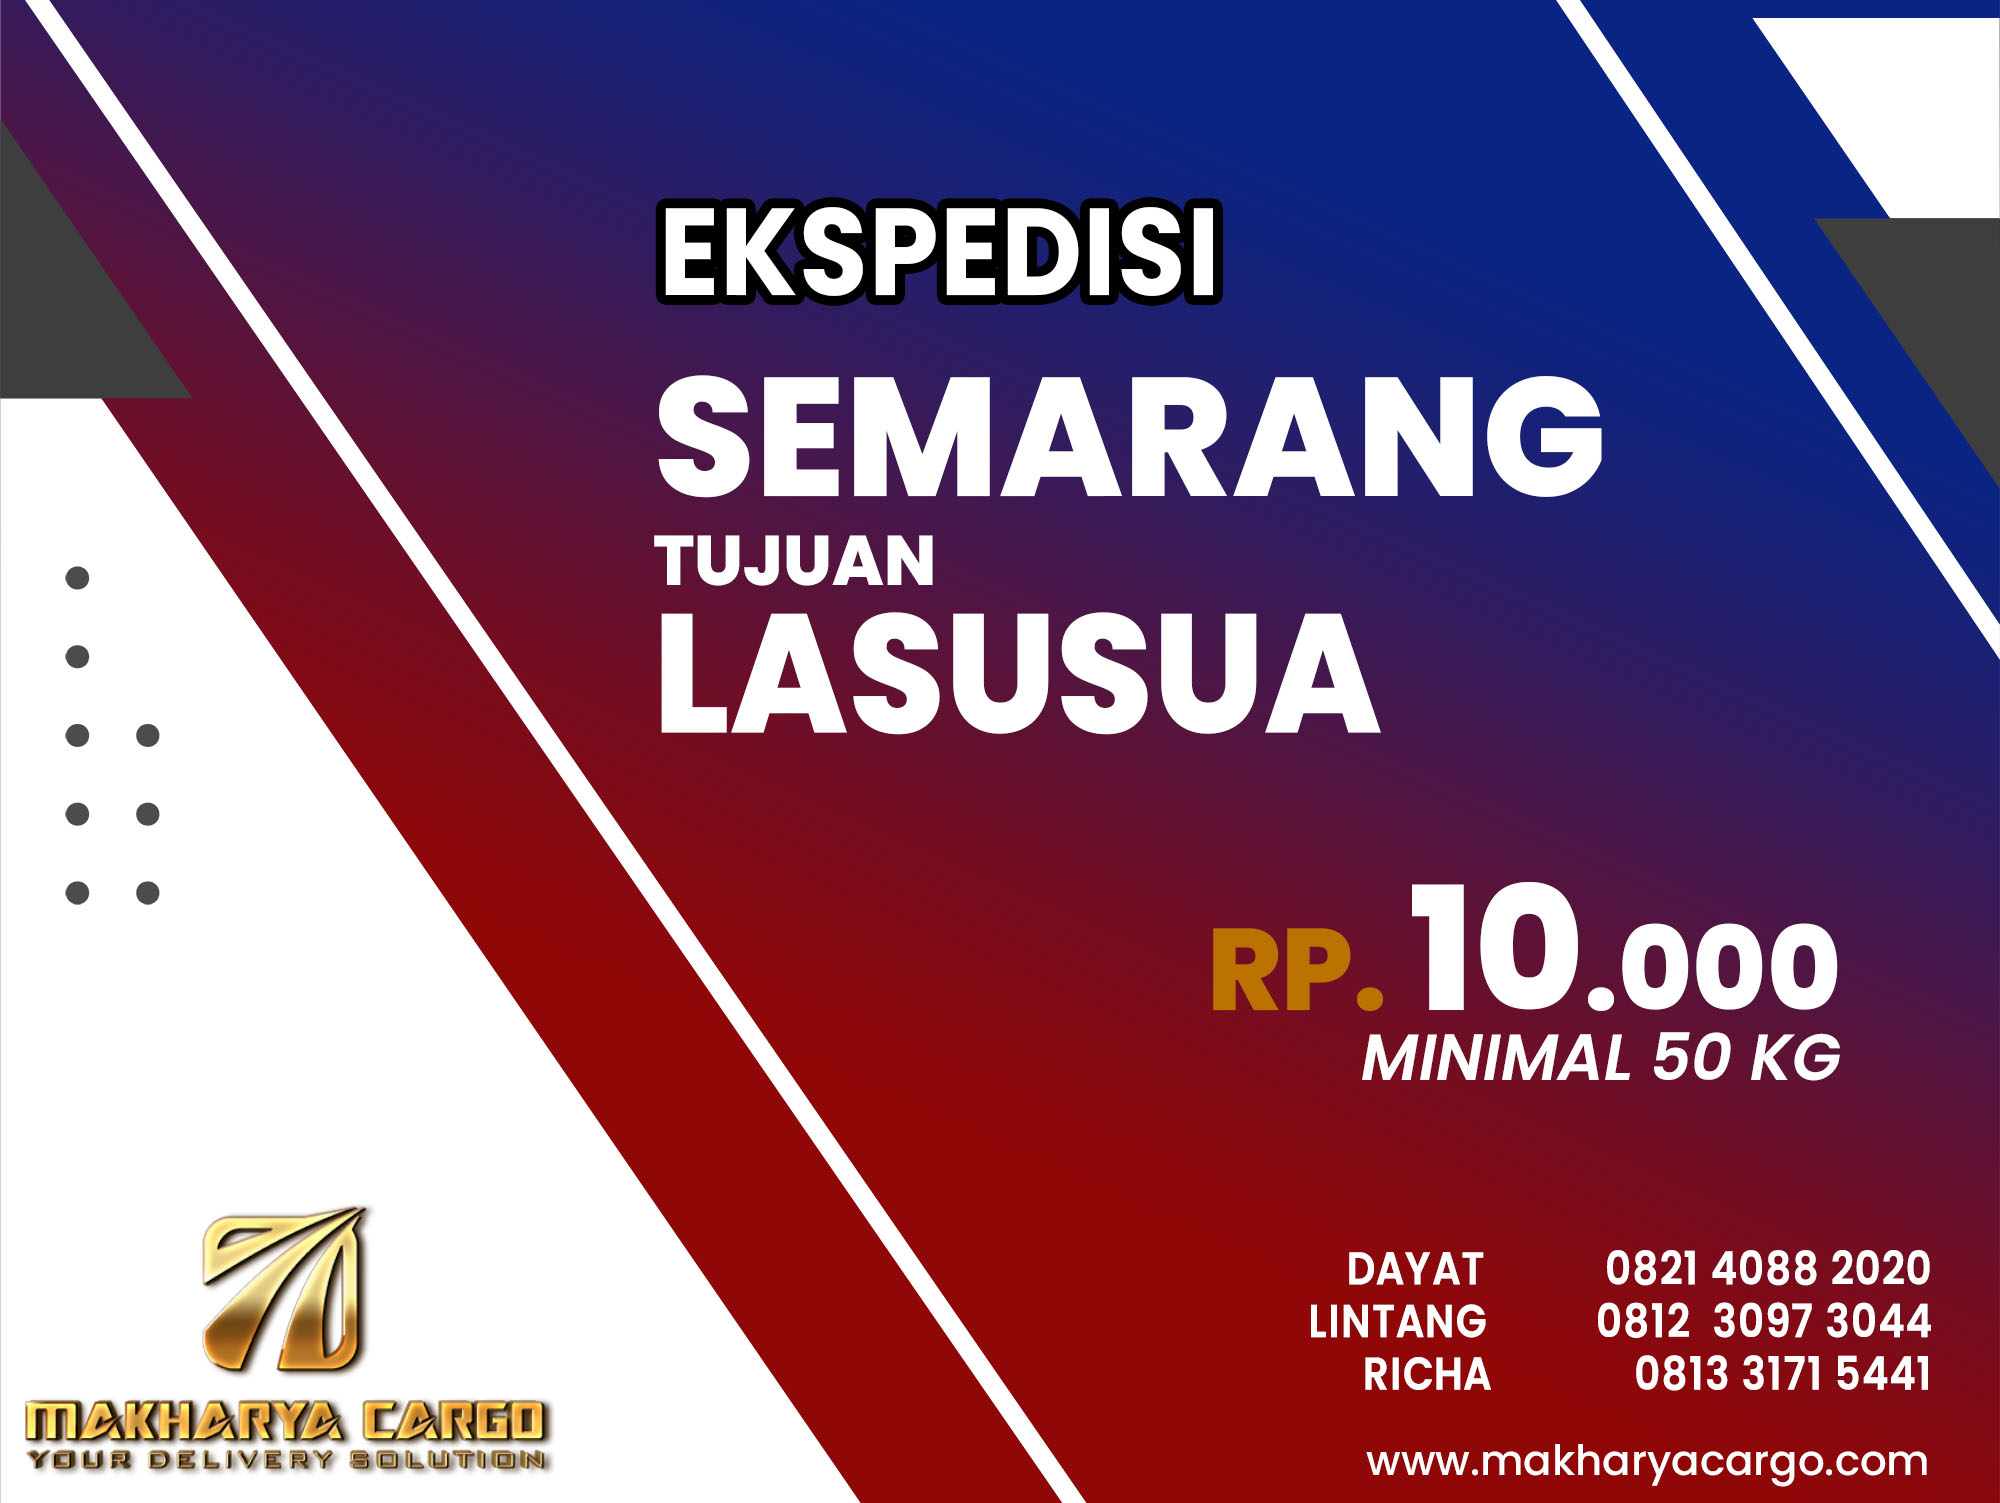 Ekspedisi Semarang Lasusua